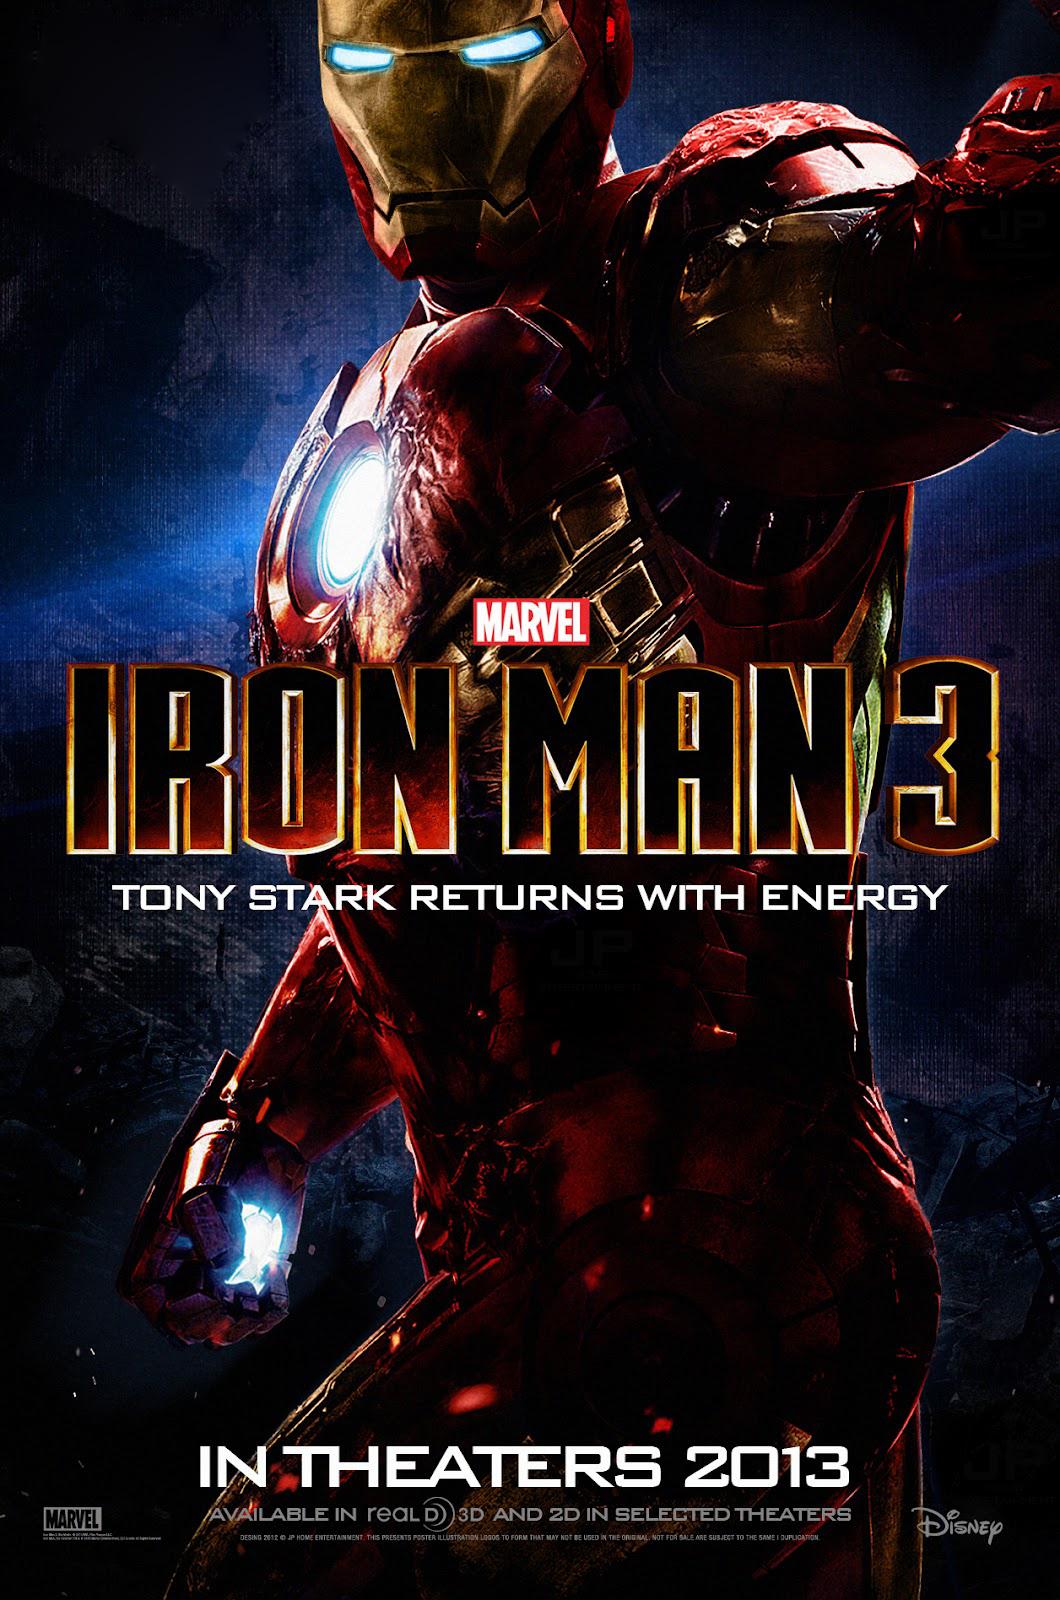 [Image: Iron-man-3-iron-man-31758025-1060-1600.jpg]